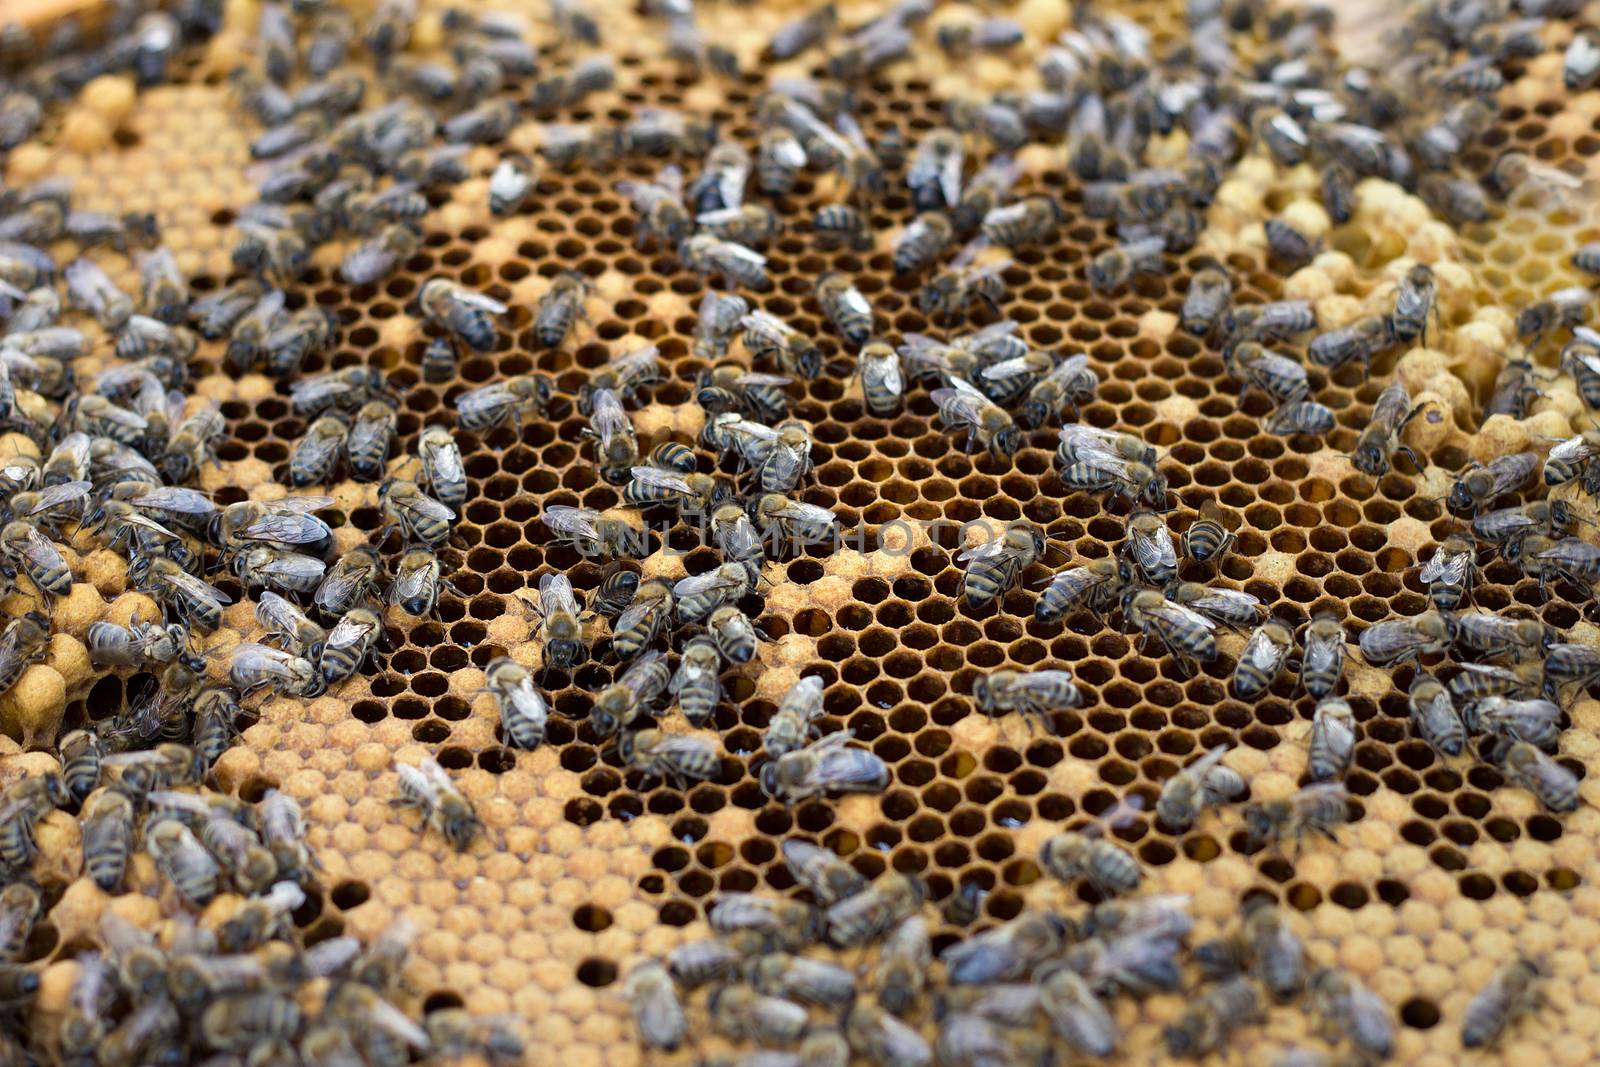 bees on honey frame. Breeding bees. Beekeeping